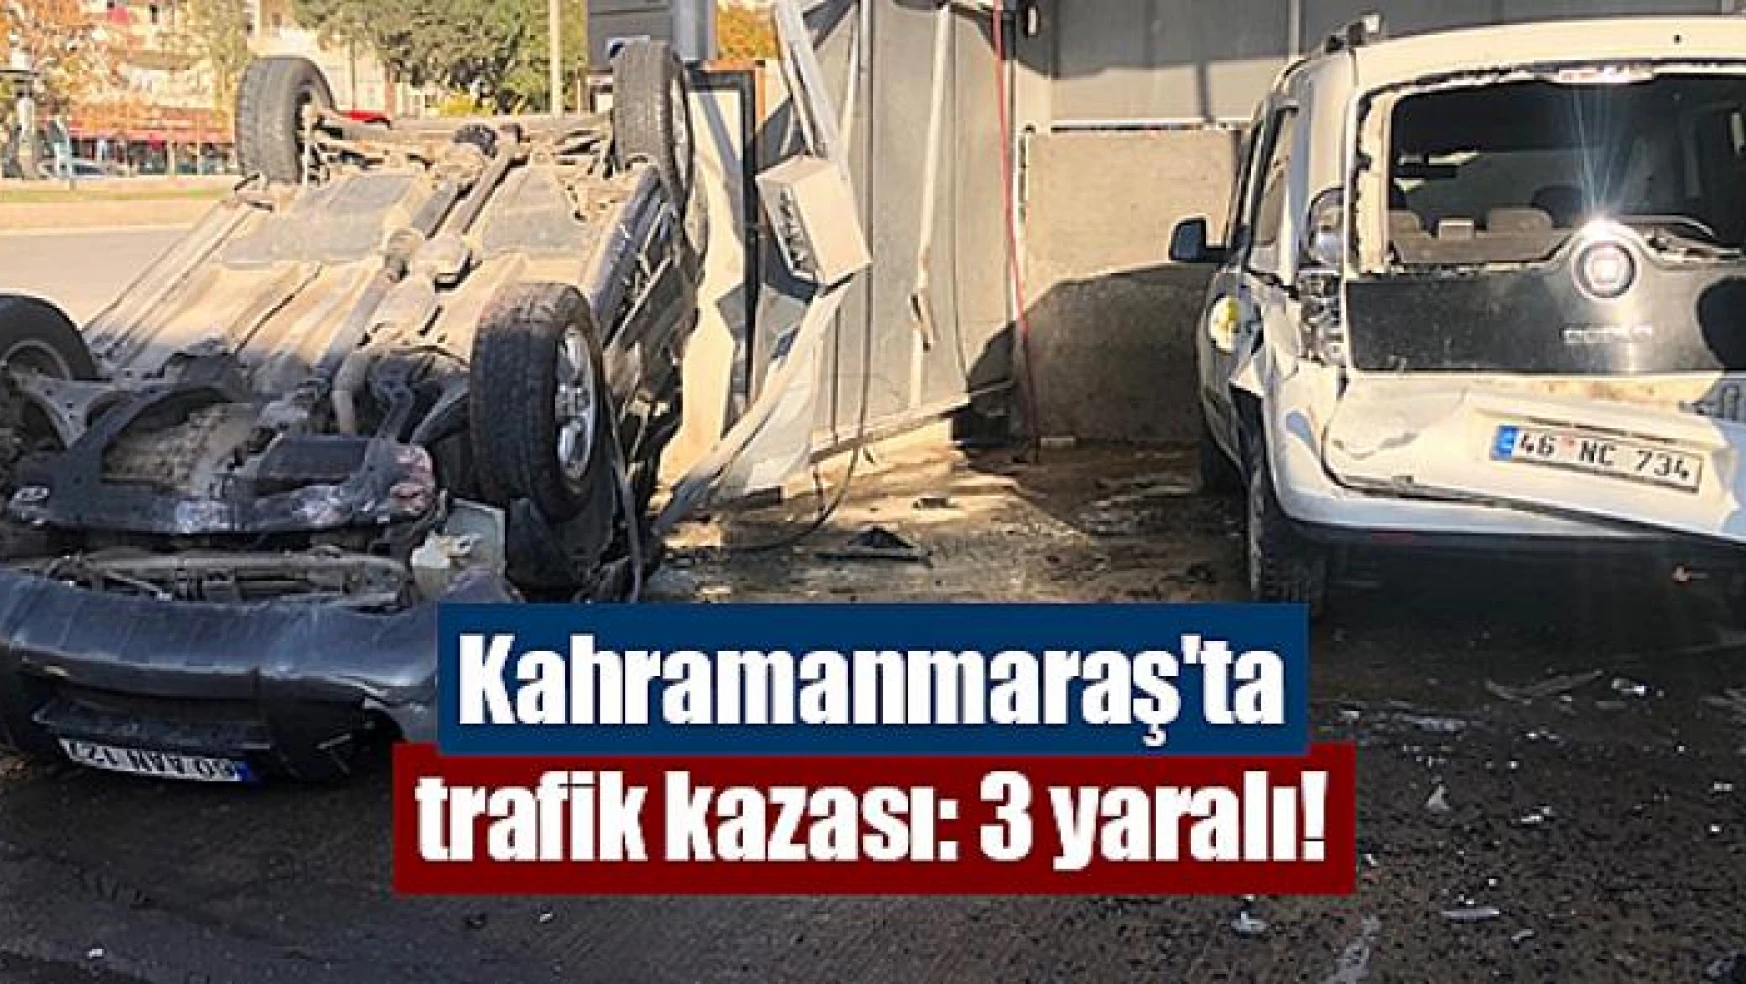 Kahramanmaraş'ta trafik kazası: 3 yaralı!